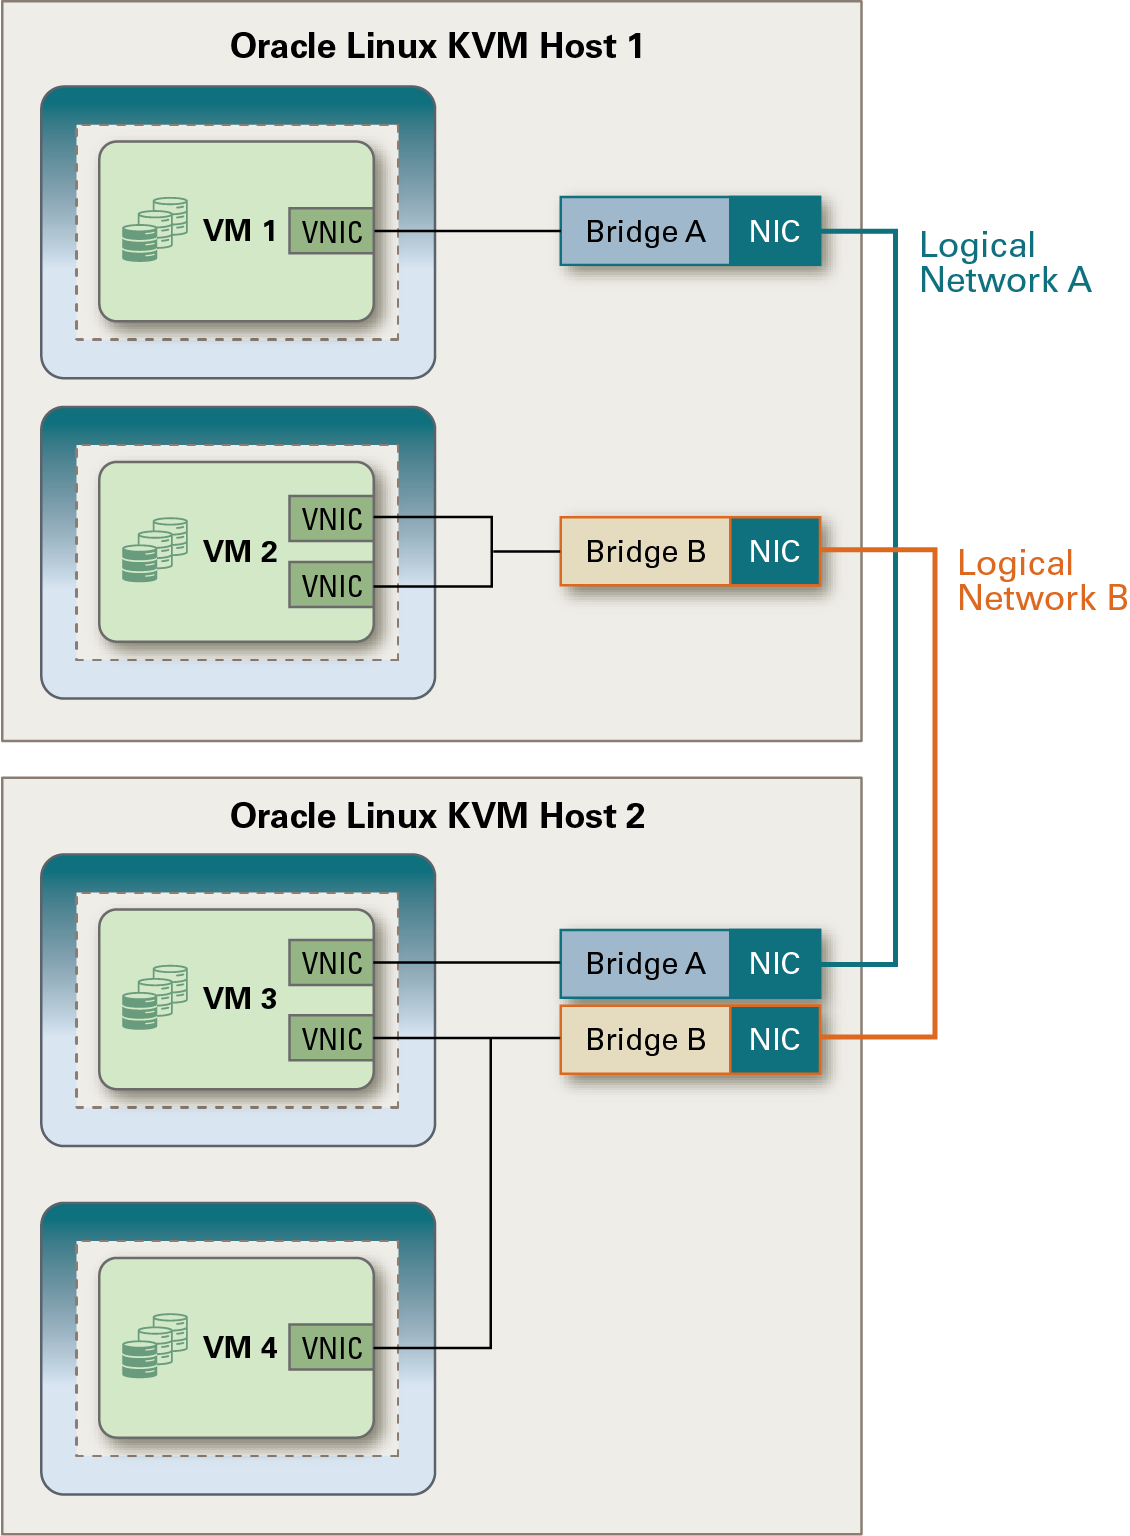 前のテキストで説明したように、VMネットワーク用のOracle Linux KVMホストで作成されたブリッジを表示します。